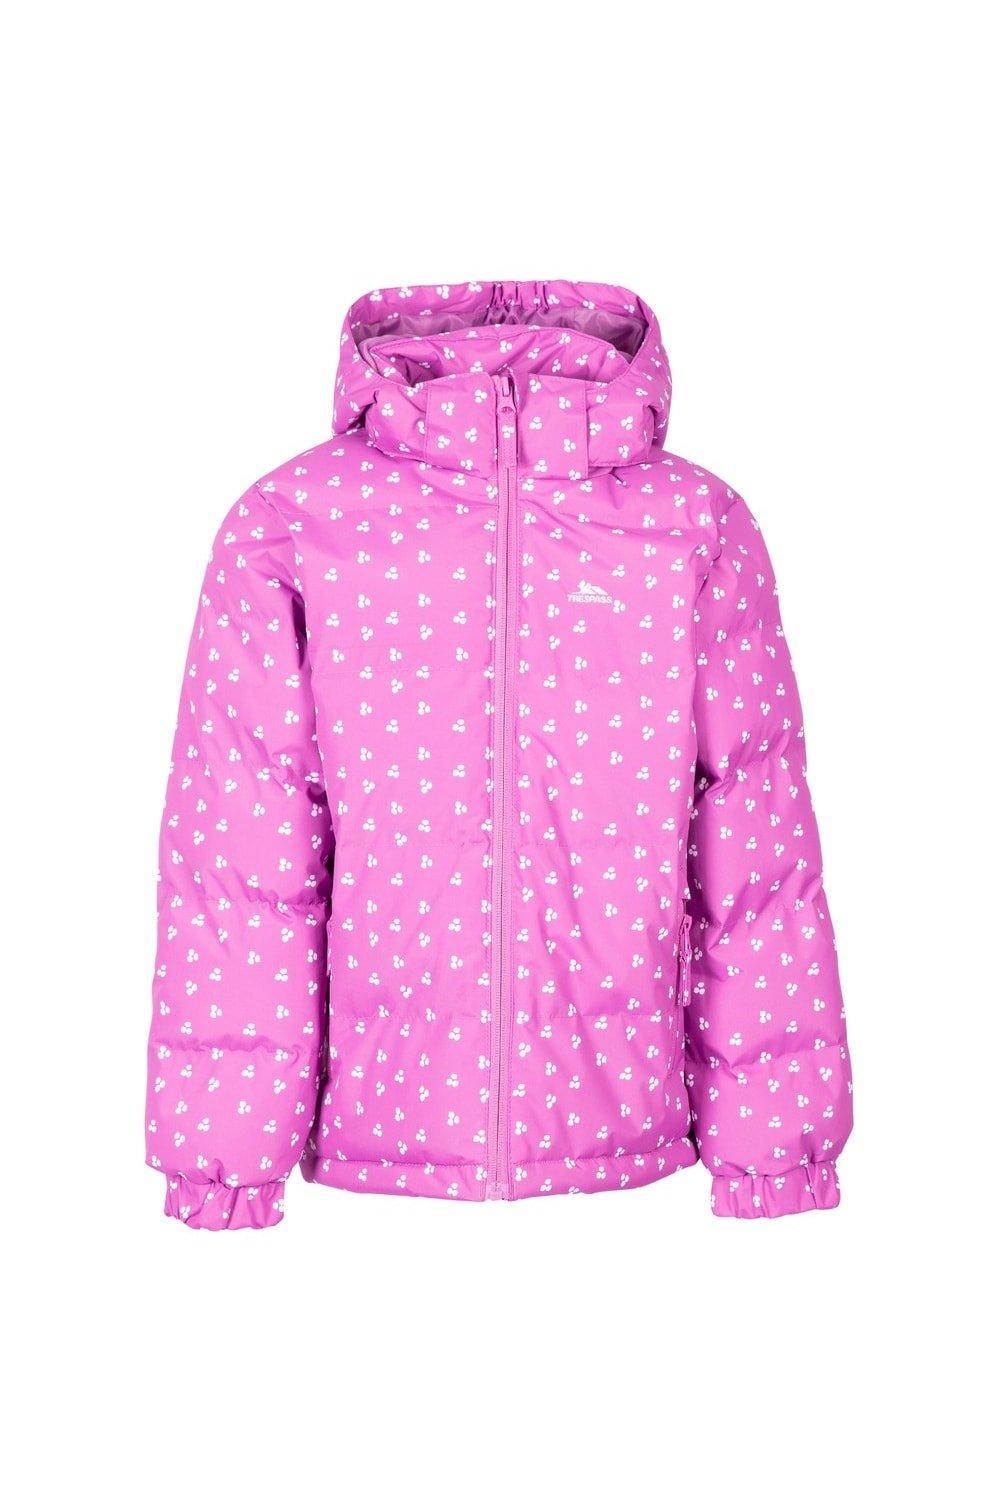 Комбинированная дутая куртка Trespass, розовый